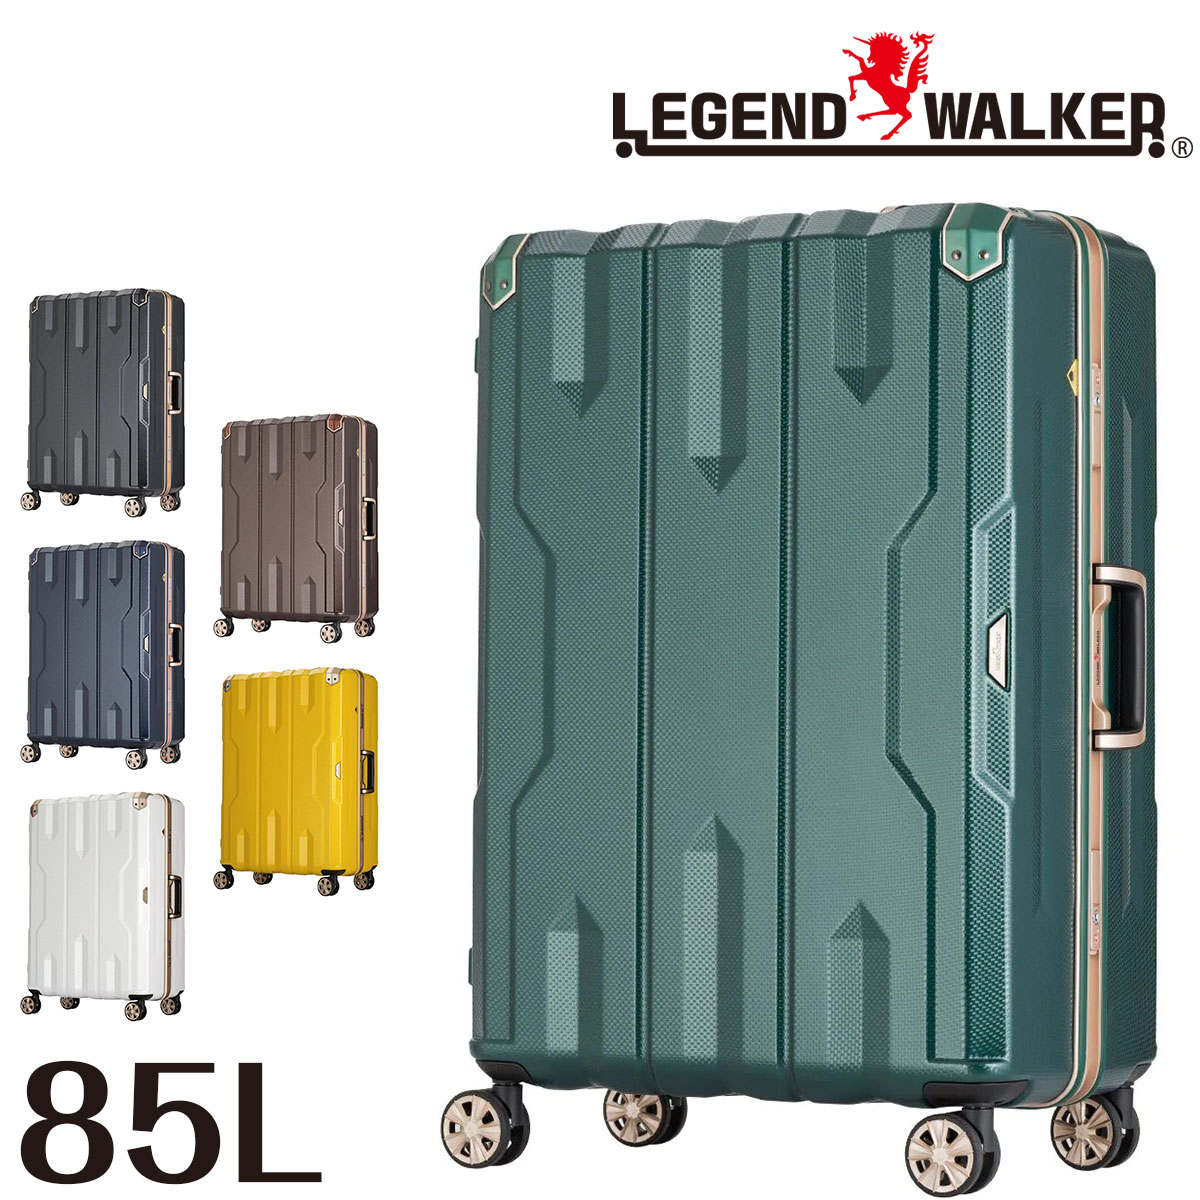 【メーカー直送】 レジェンドウォーカー LEGEND WALKER スパタ SPATHA スーツケース キャリー ハード 大型 85L 7泊以上 Lサイズ フレーム